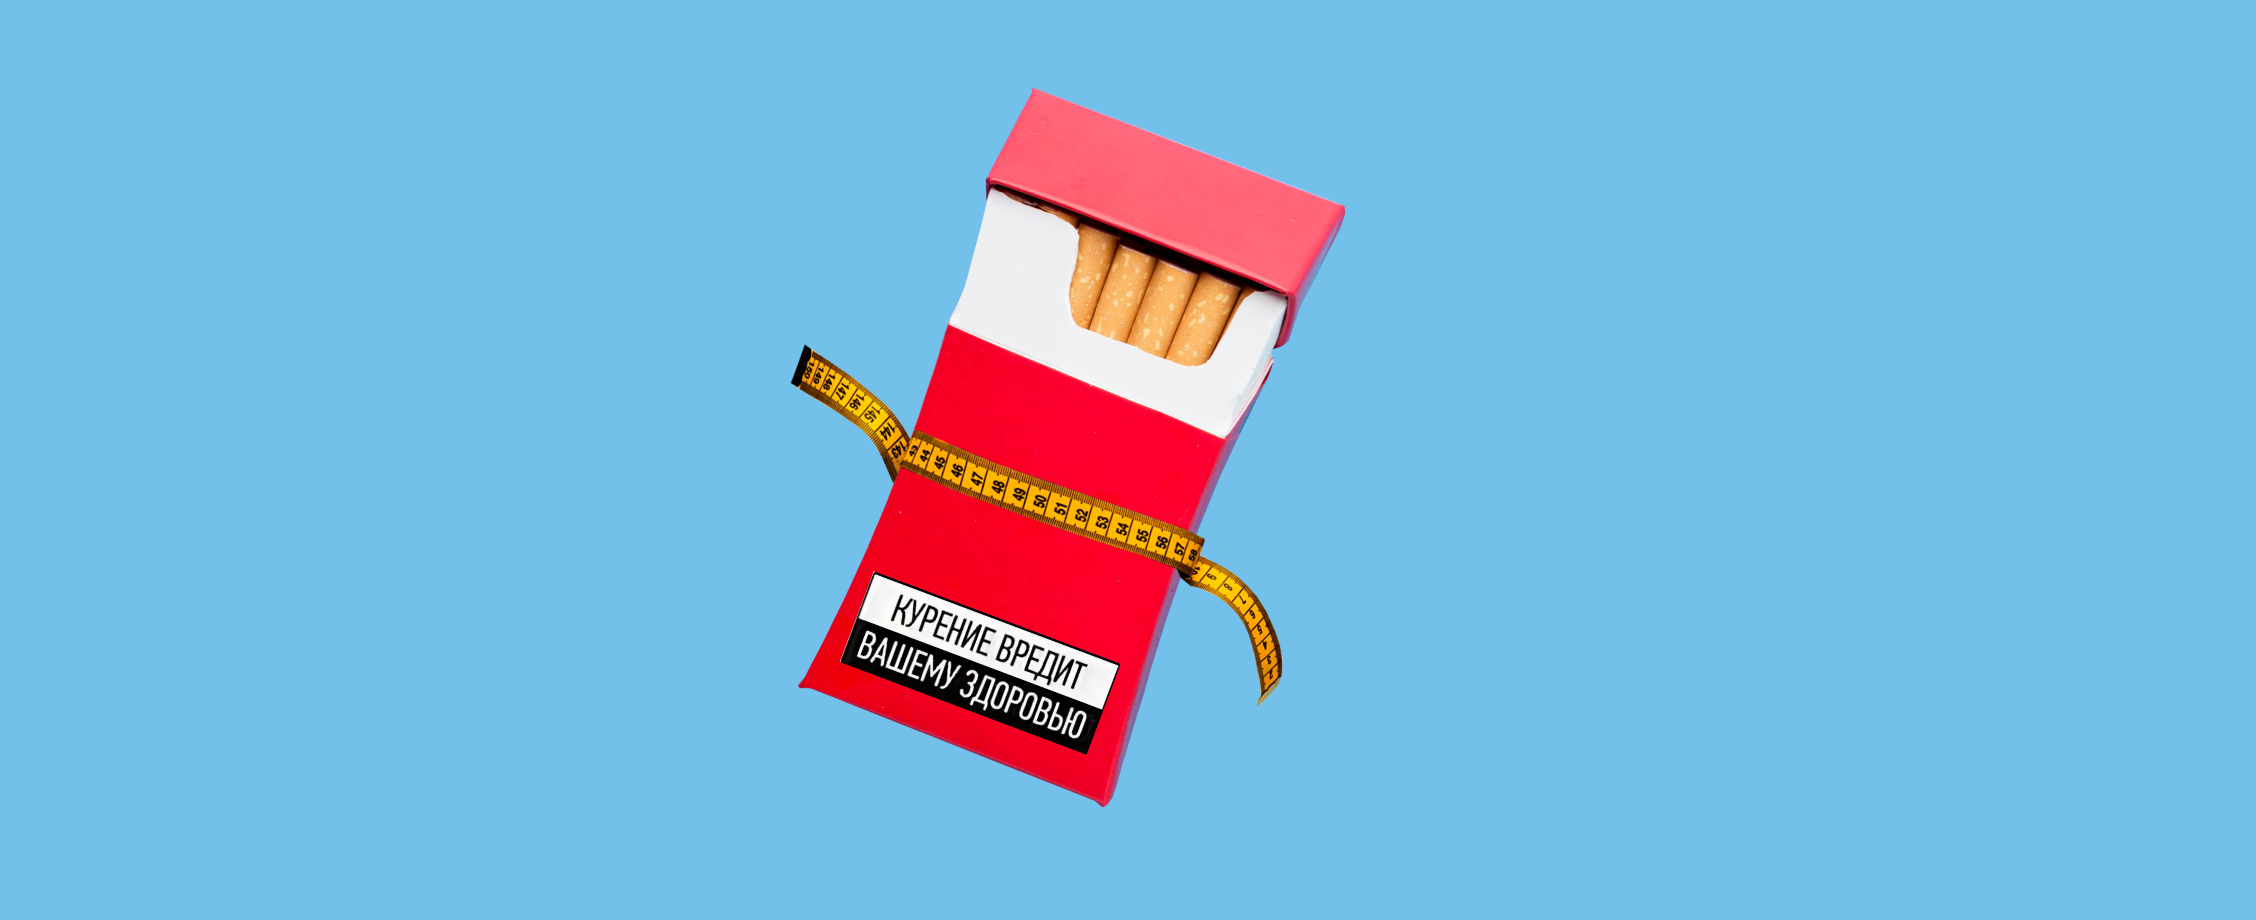 Затянуть пояса или затянуться сигаретой: на сколько в 2023 году подорожает вредная привычка